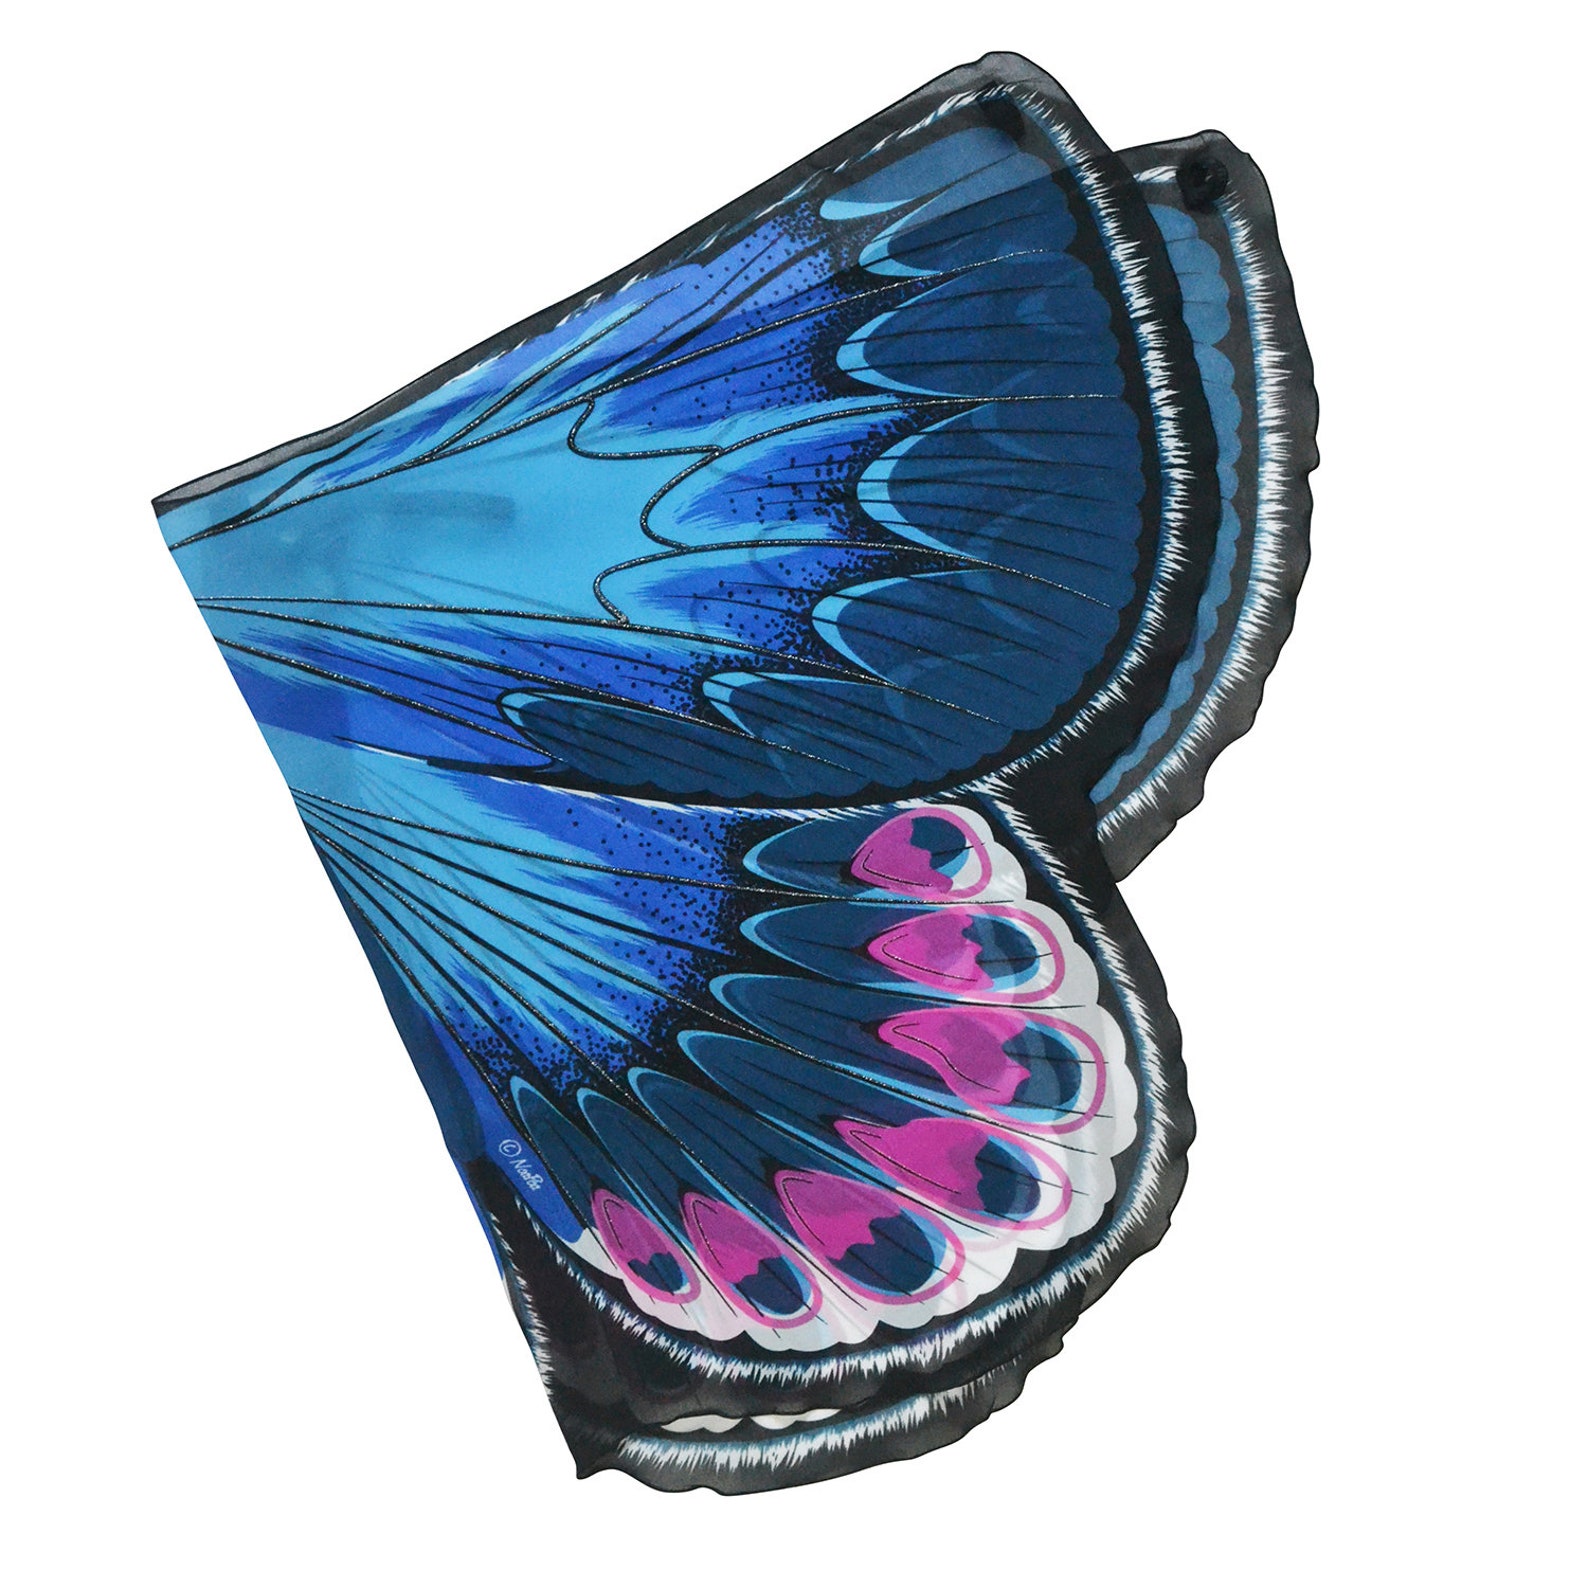 DREAMY DRESS-UPS Jaune Ailes de Papillon Fantaisie 